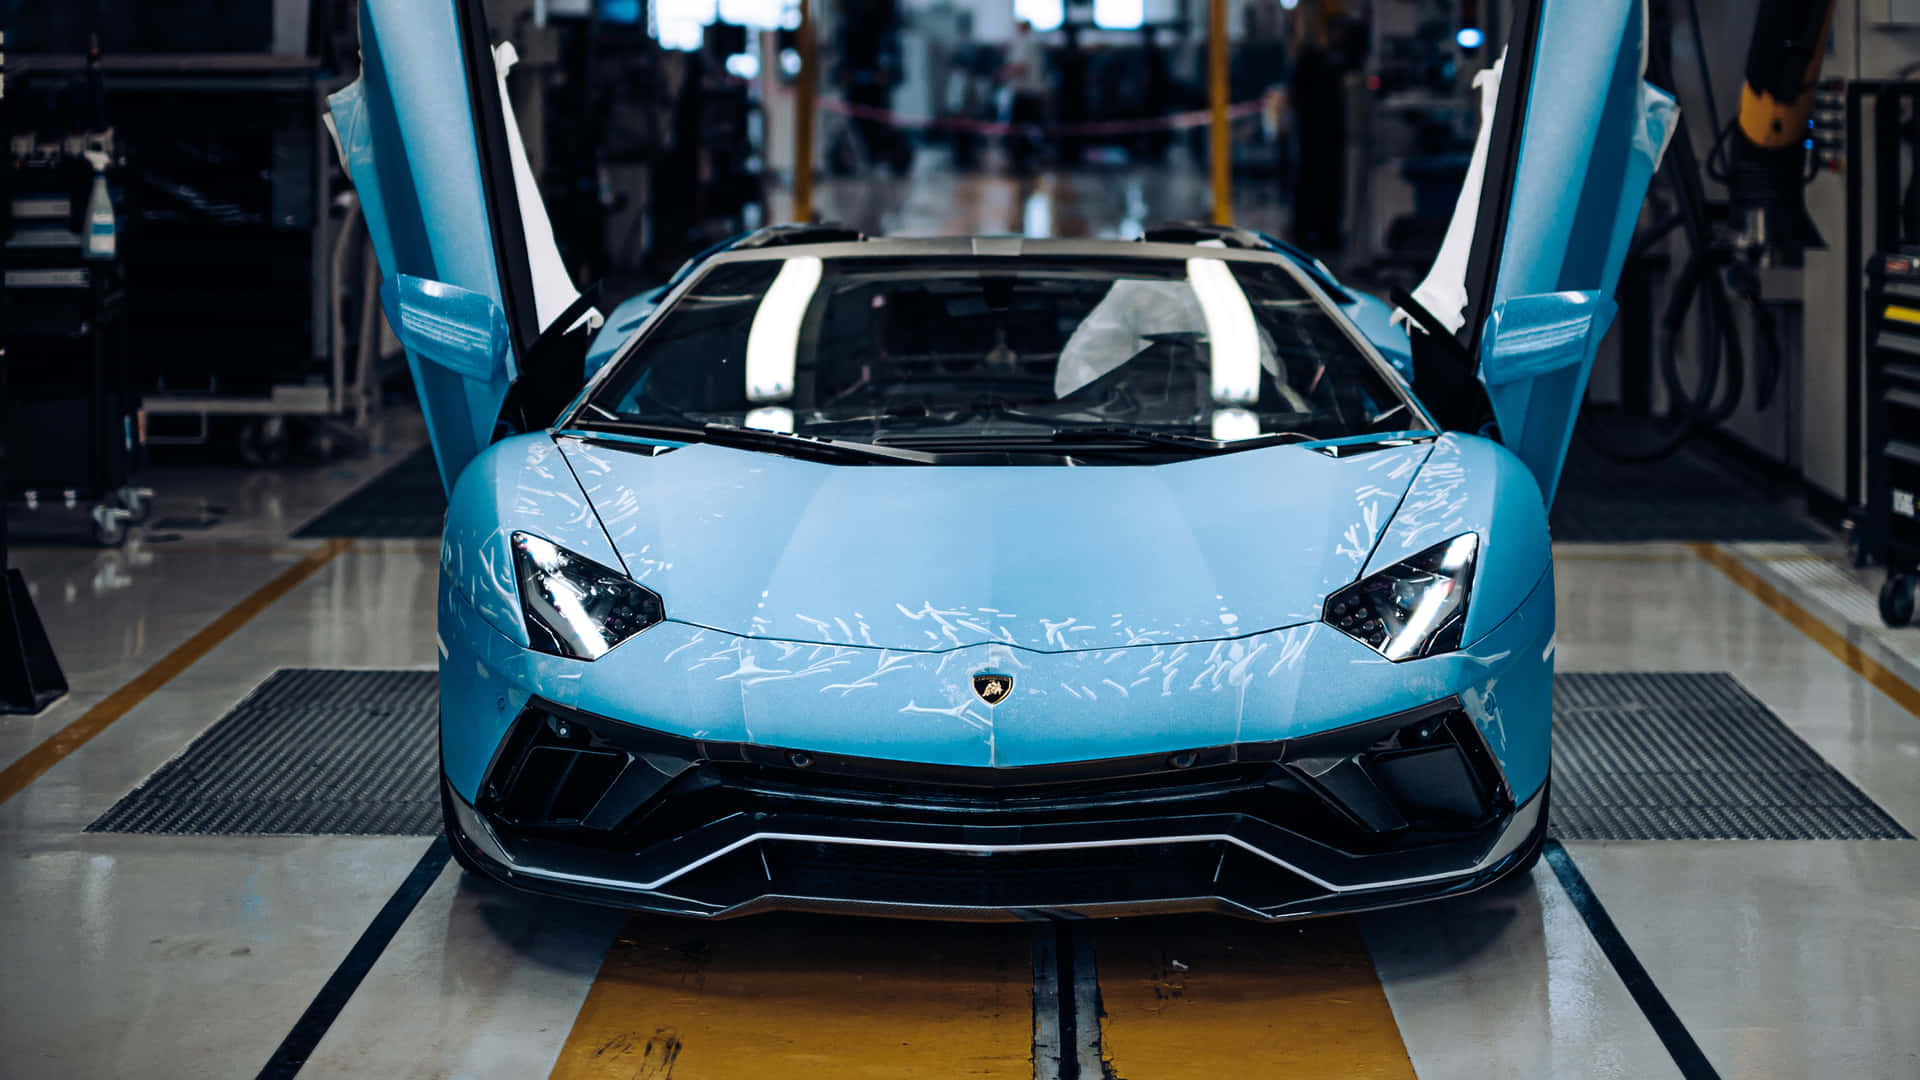 Unautomóvil Deportivo Lamborghini Azul Está Estacionado En Una Fábrica.